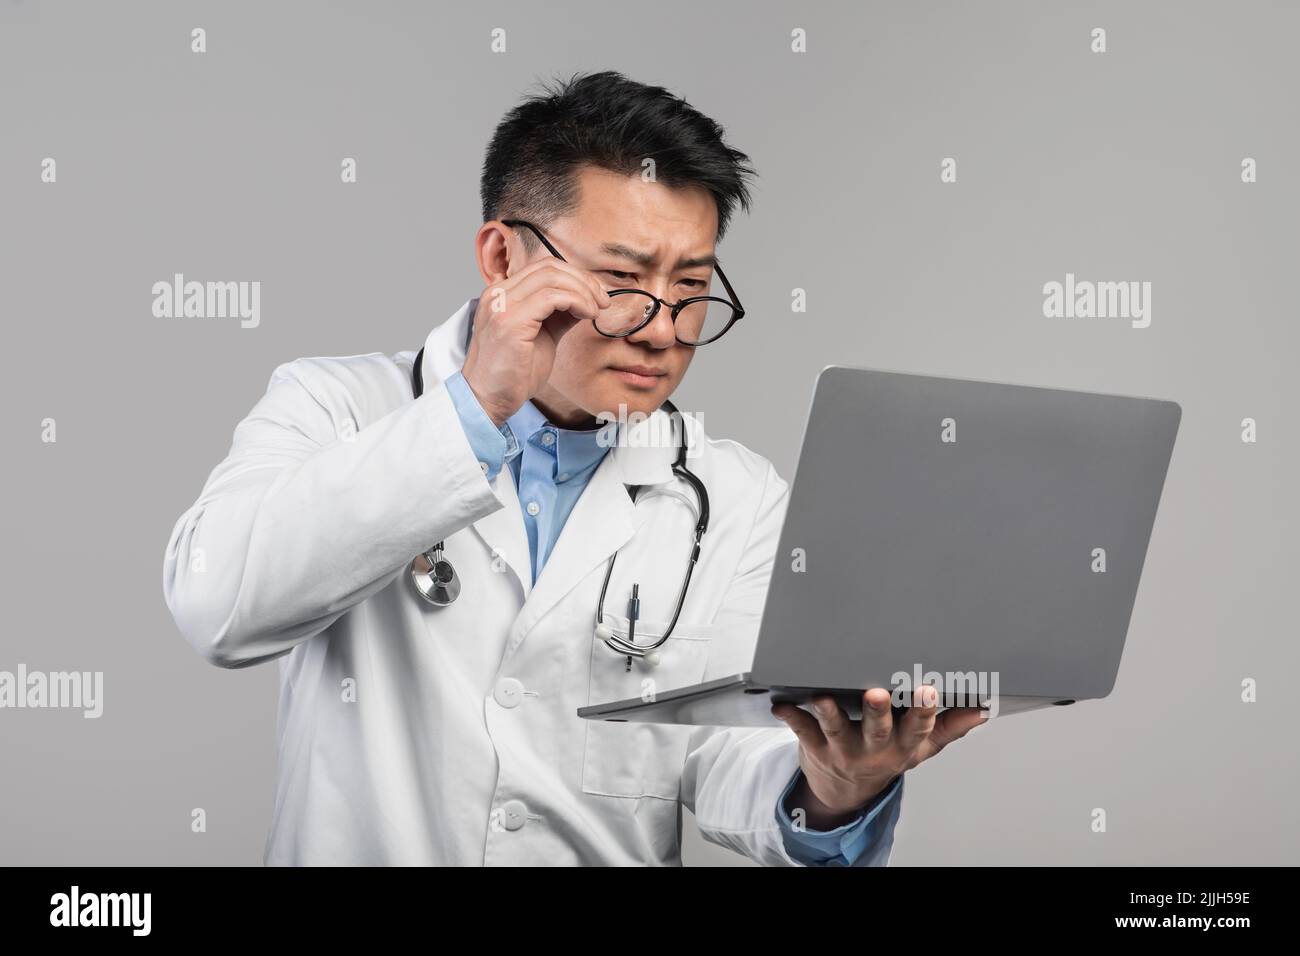 Confus adulte concentré asiatique homme médecin dans le manteau blanc prend des lunettes, regarde l'ordinateur portable Banque D'Images